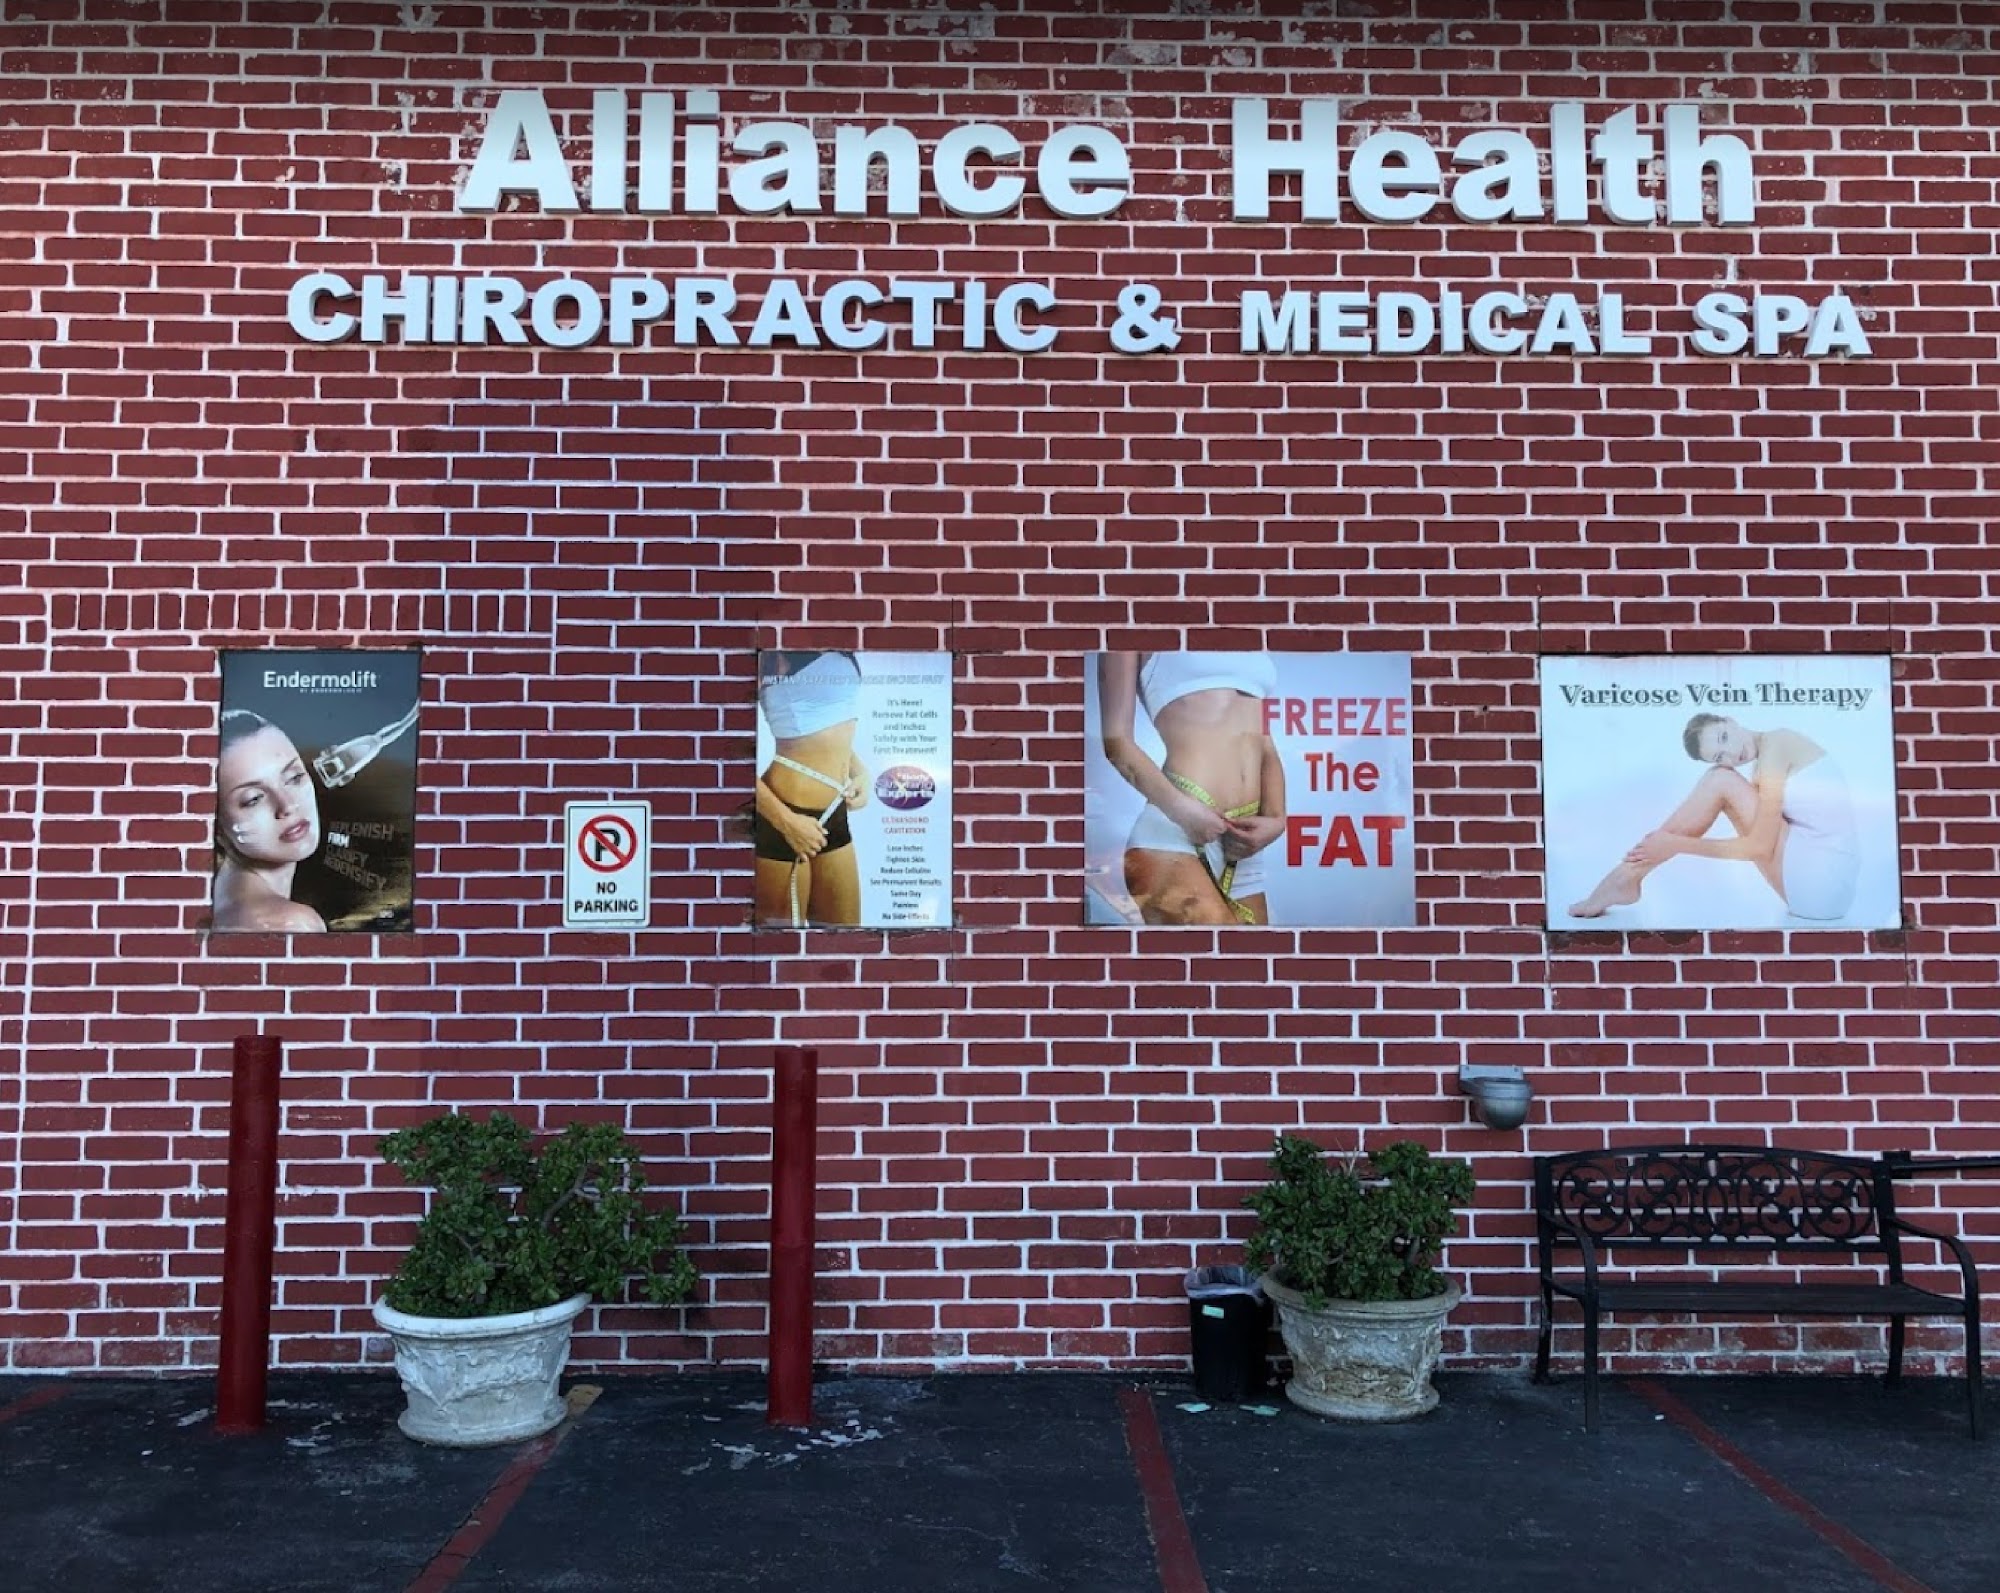 Alliance Health Choice